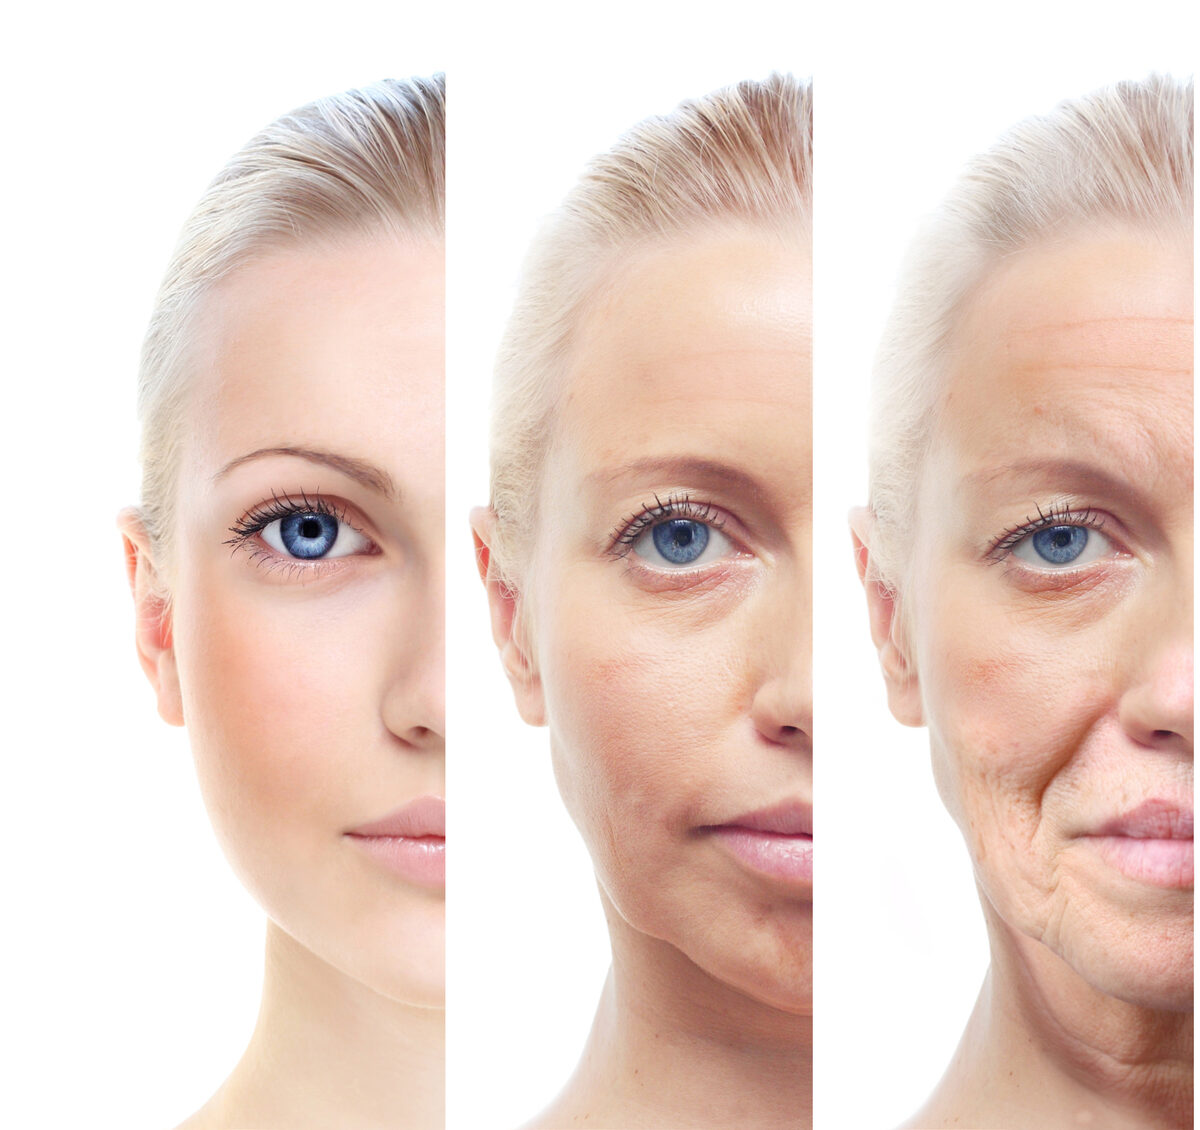 Signos del envejecimiento de la piel